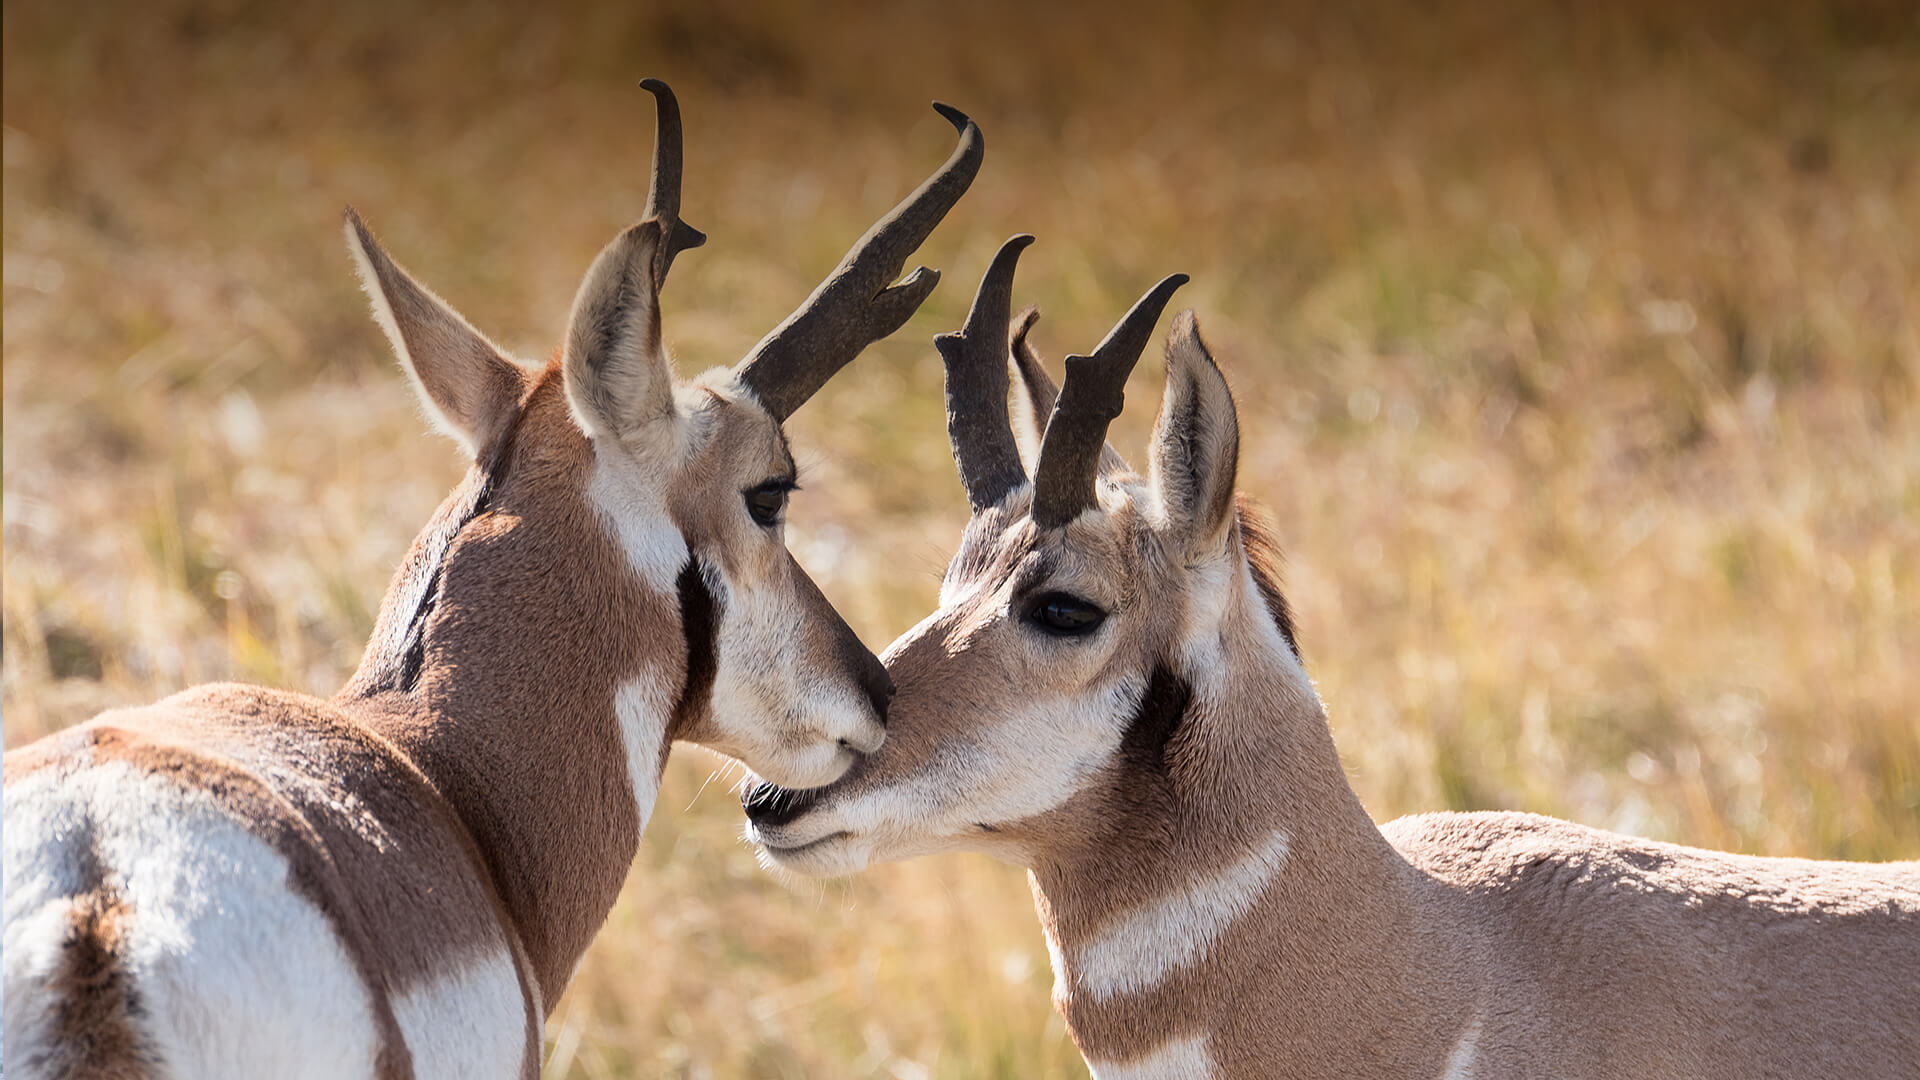 740+ Gambar Hewan Pronghorn Antelope Terbaru